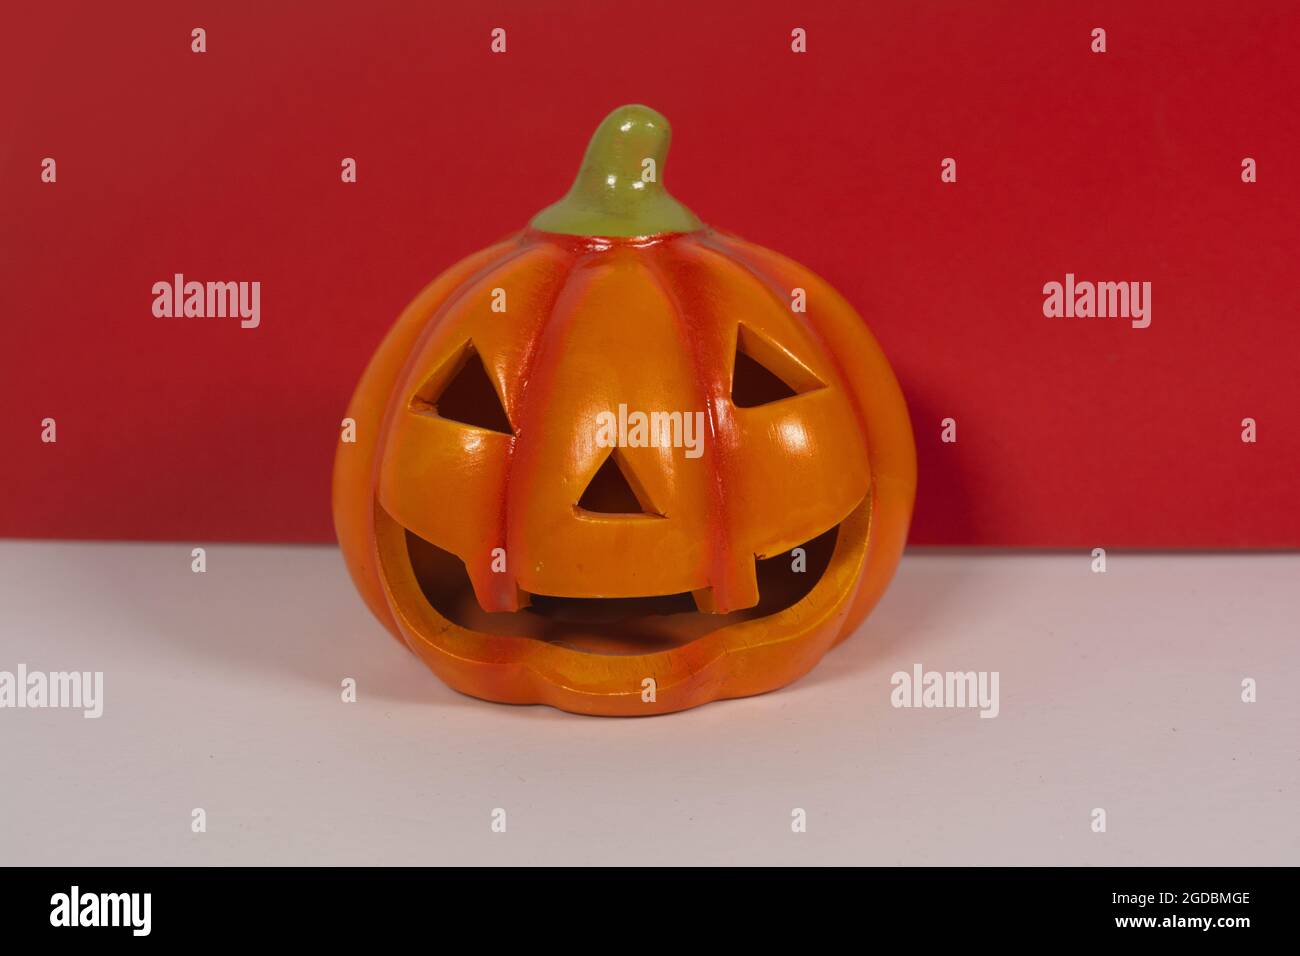 Closeup of a Halloween pumpkin candleholder Stock Photo